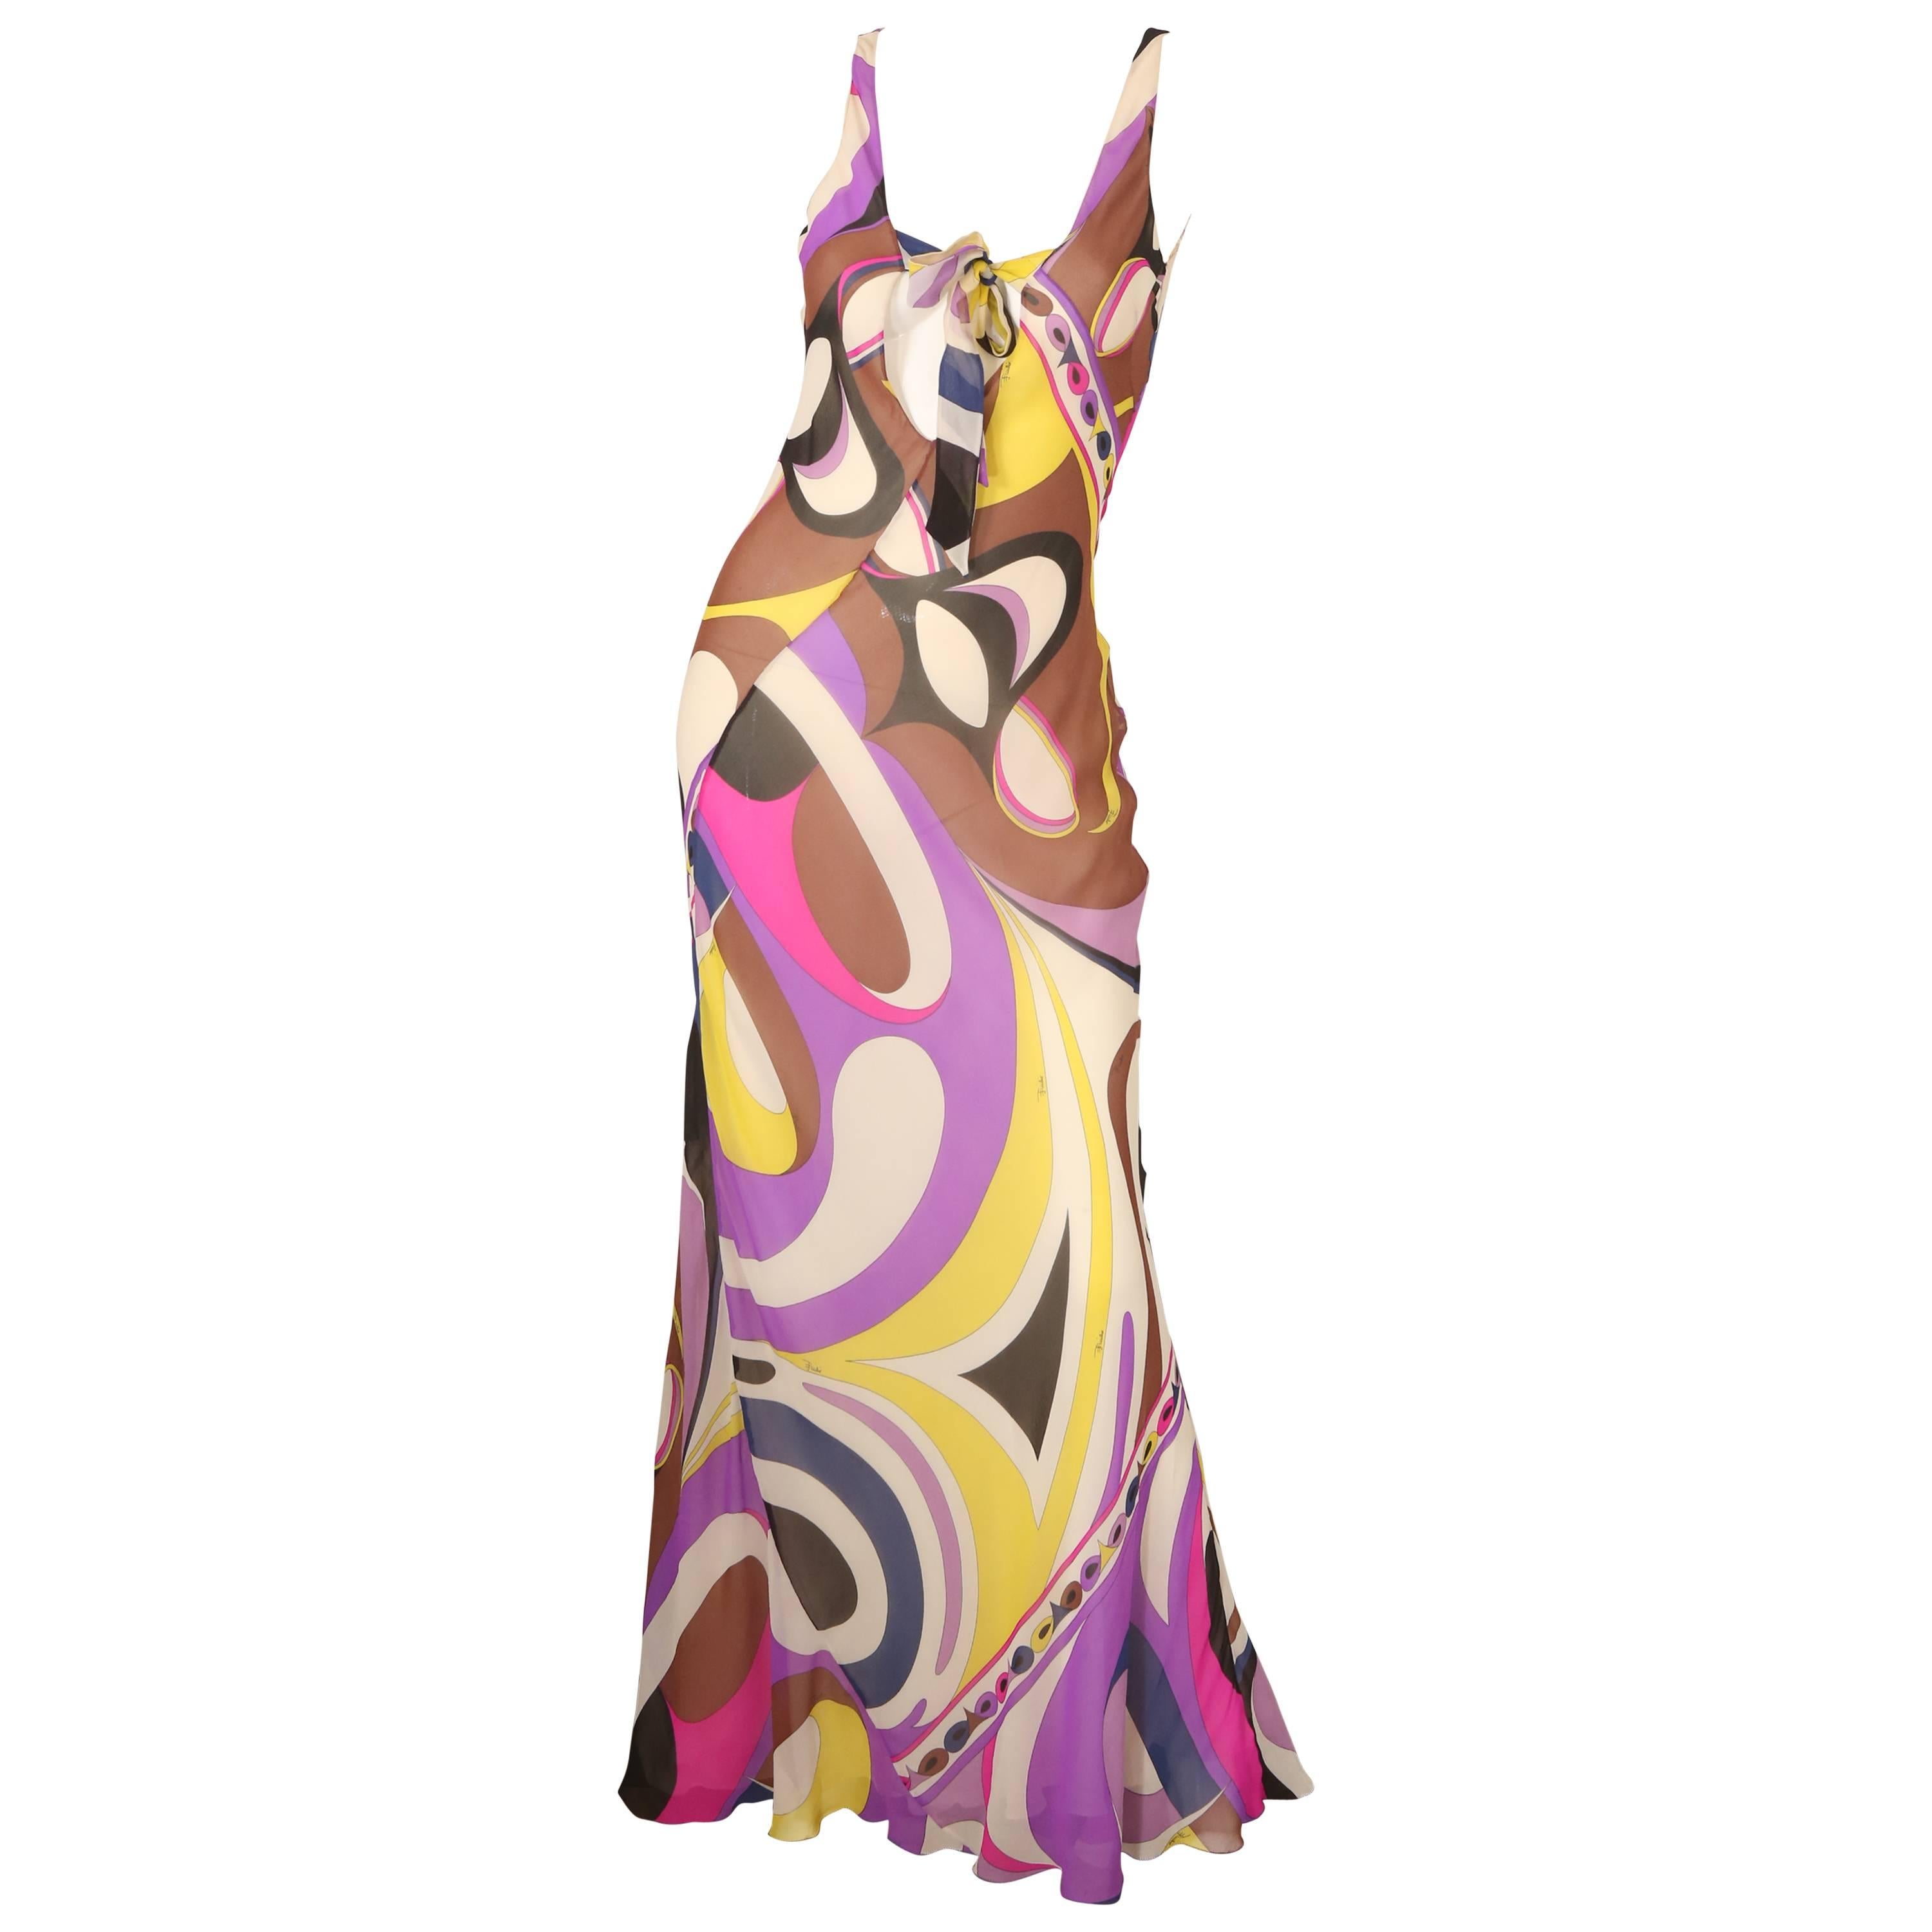 Emilio Pucci S/L Multi-Colored Printed Gown 